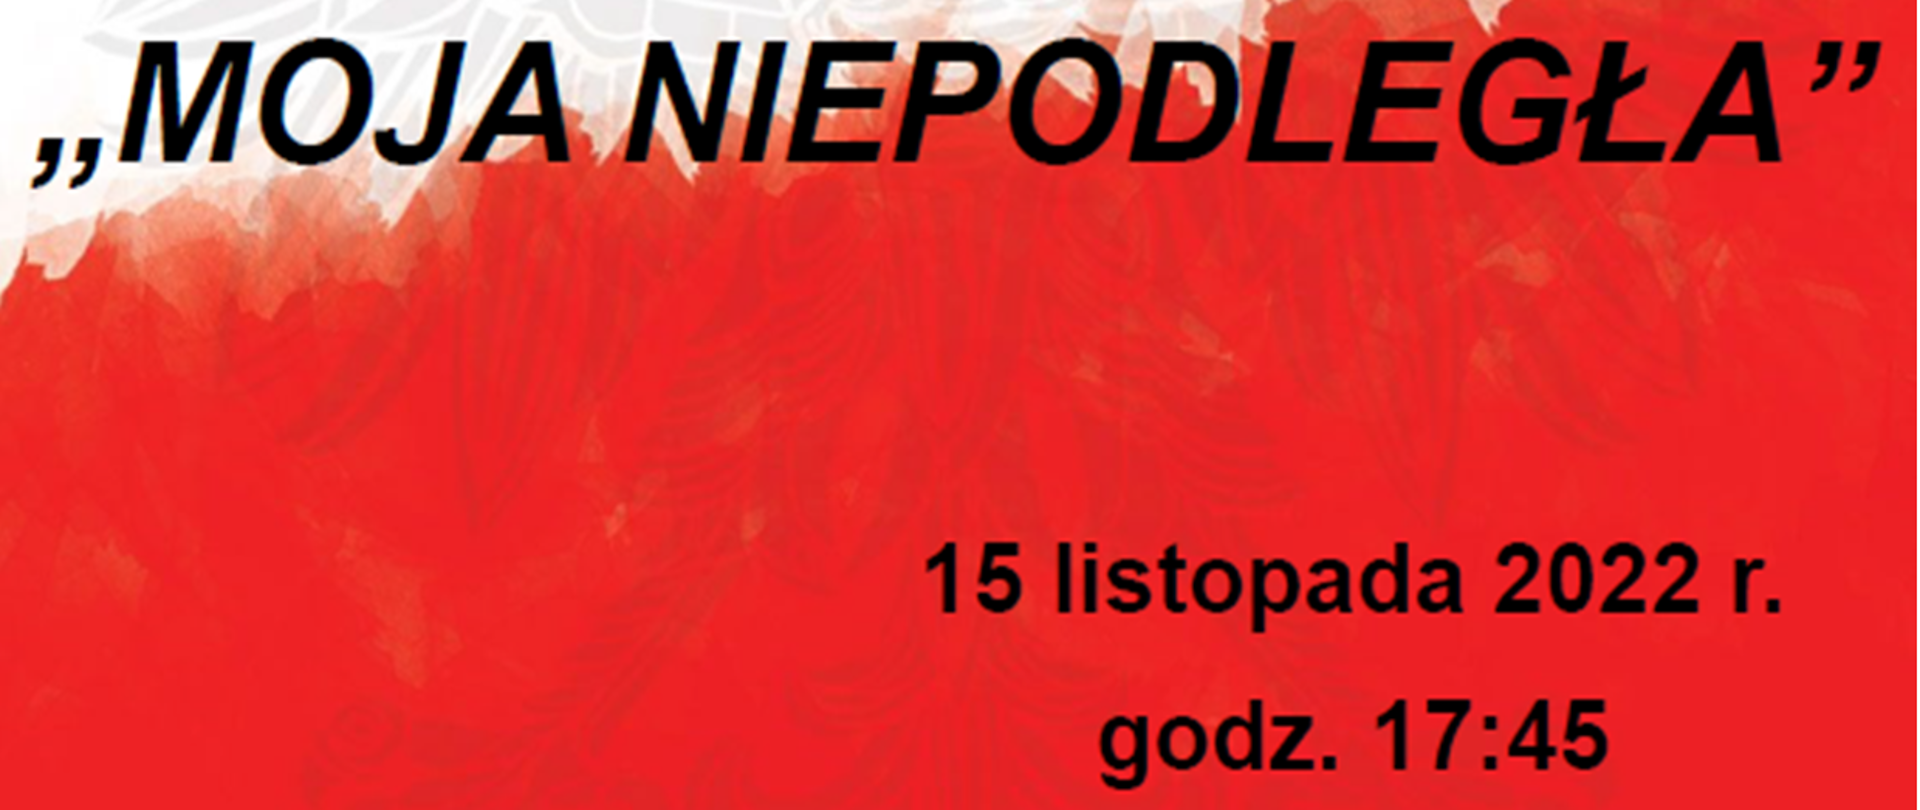 Plakat w kolorze biało-czerwonej flagi Polski z orłem w koronie w tle. Na plakacie informacja: Uczniowie i nauczyciele zapraszają na audycję słowno-muzyczną "MOJA NIEPODLEGŁA" która odbędzie się 15 listopada 2022 r. o godz: 17:45 w sali koncertowej.